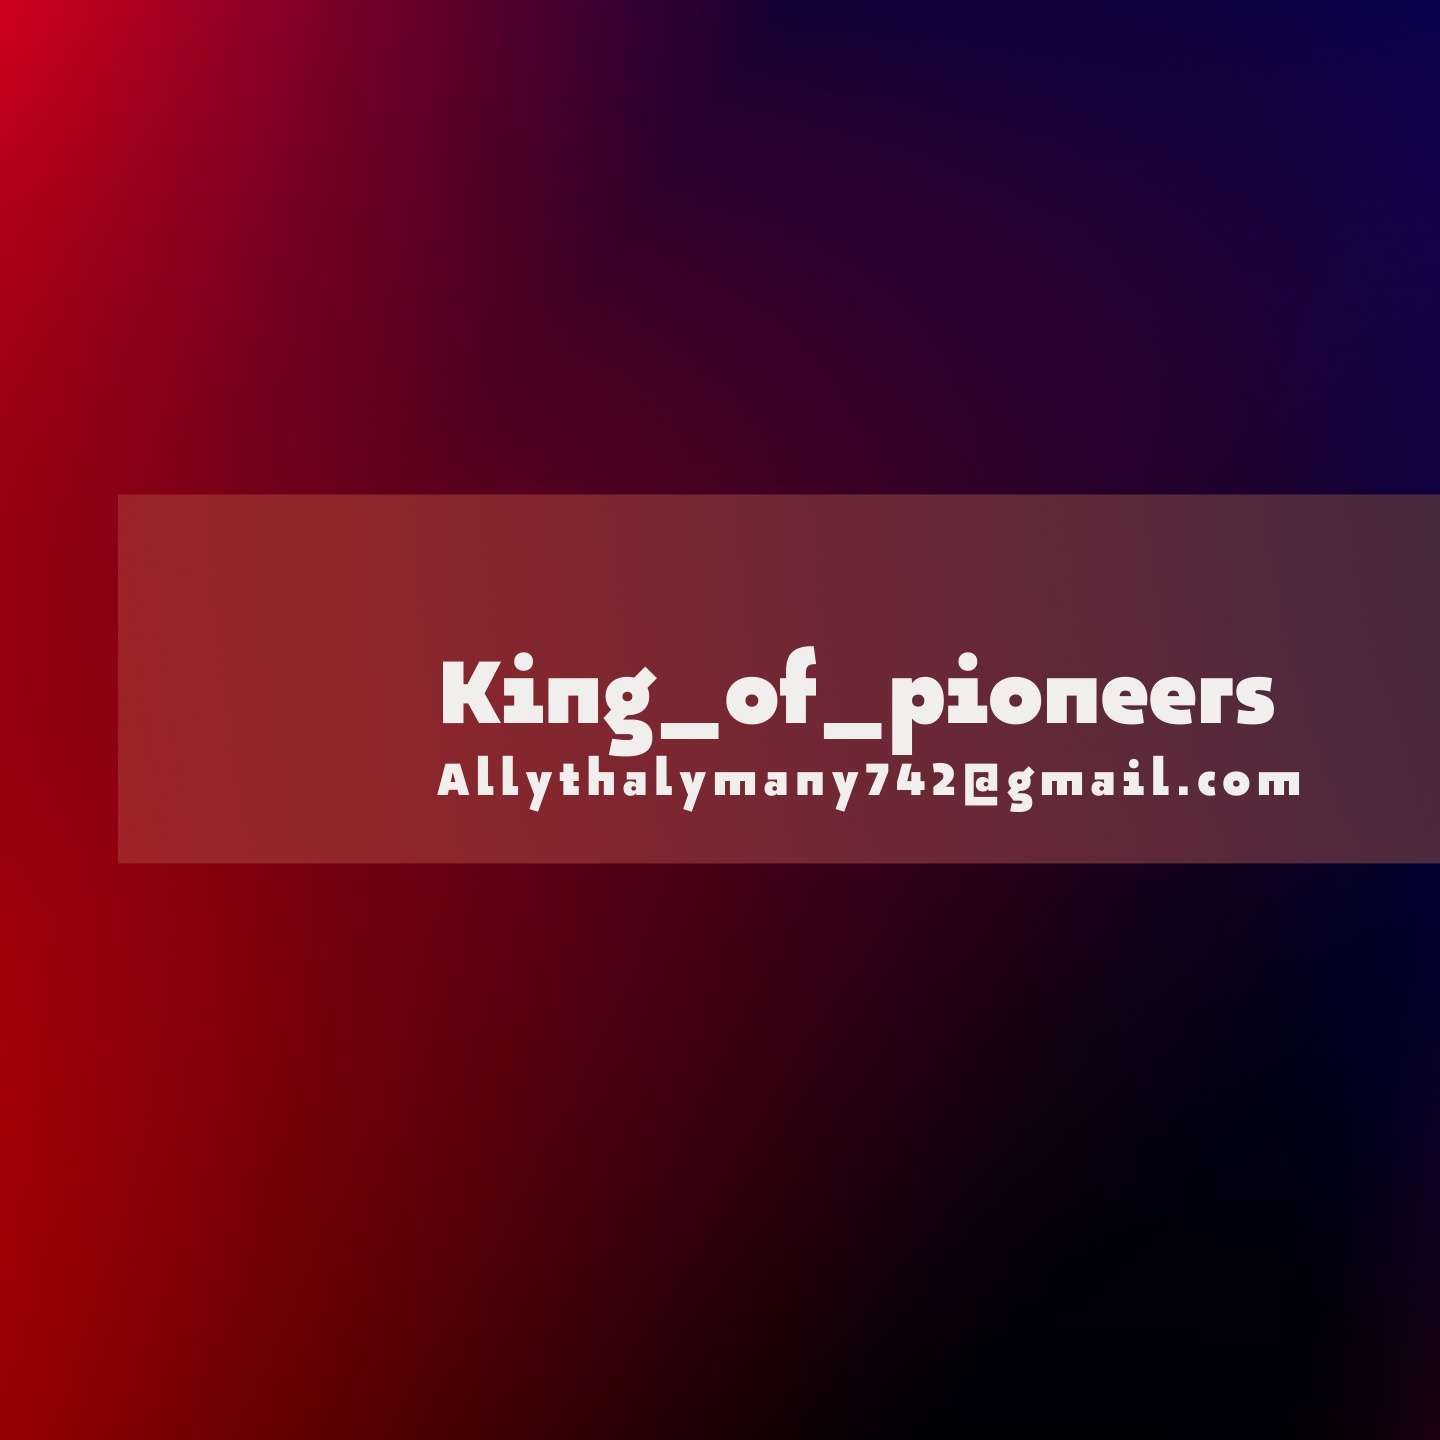 King_of_pioneers